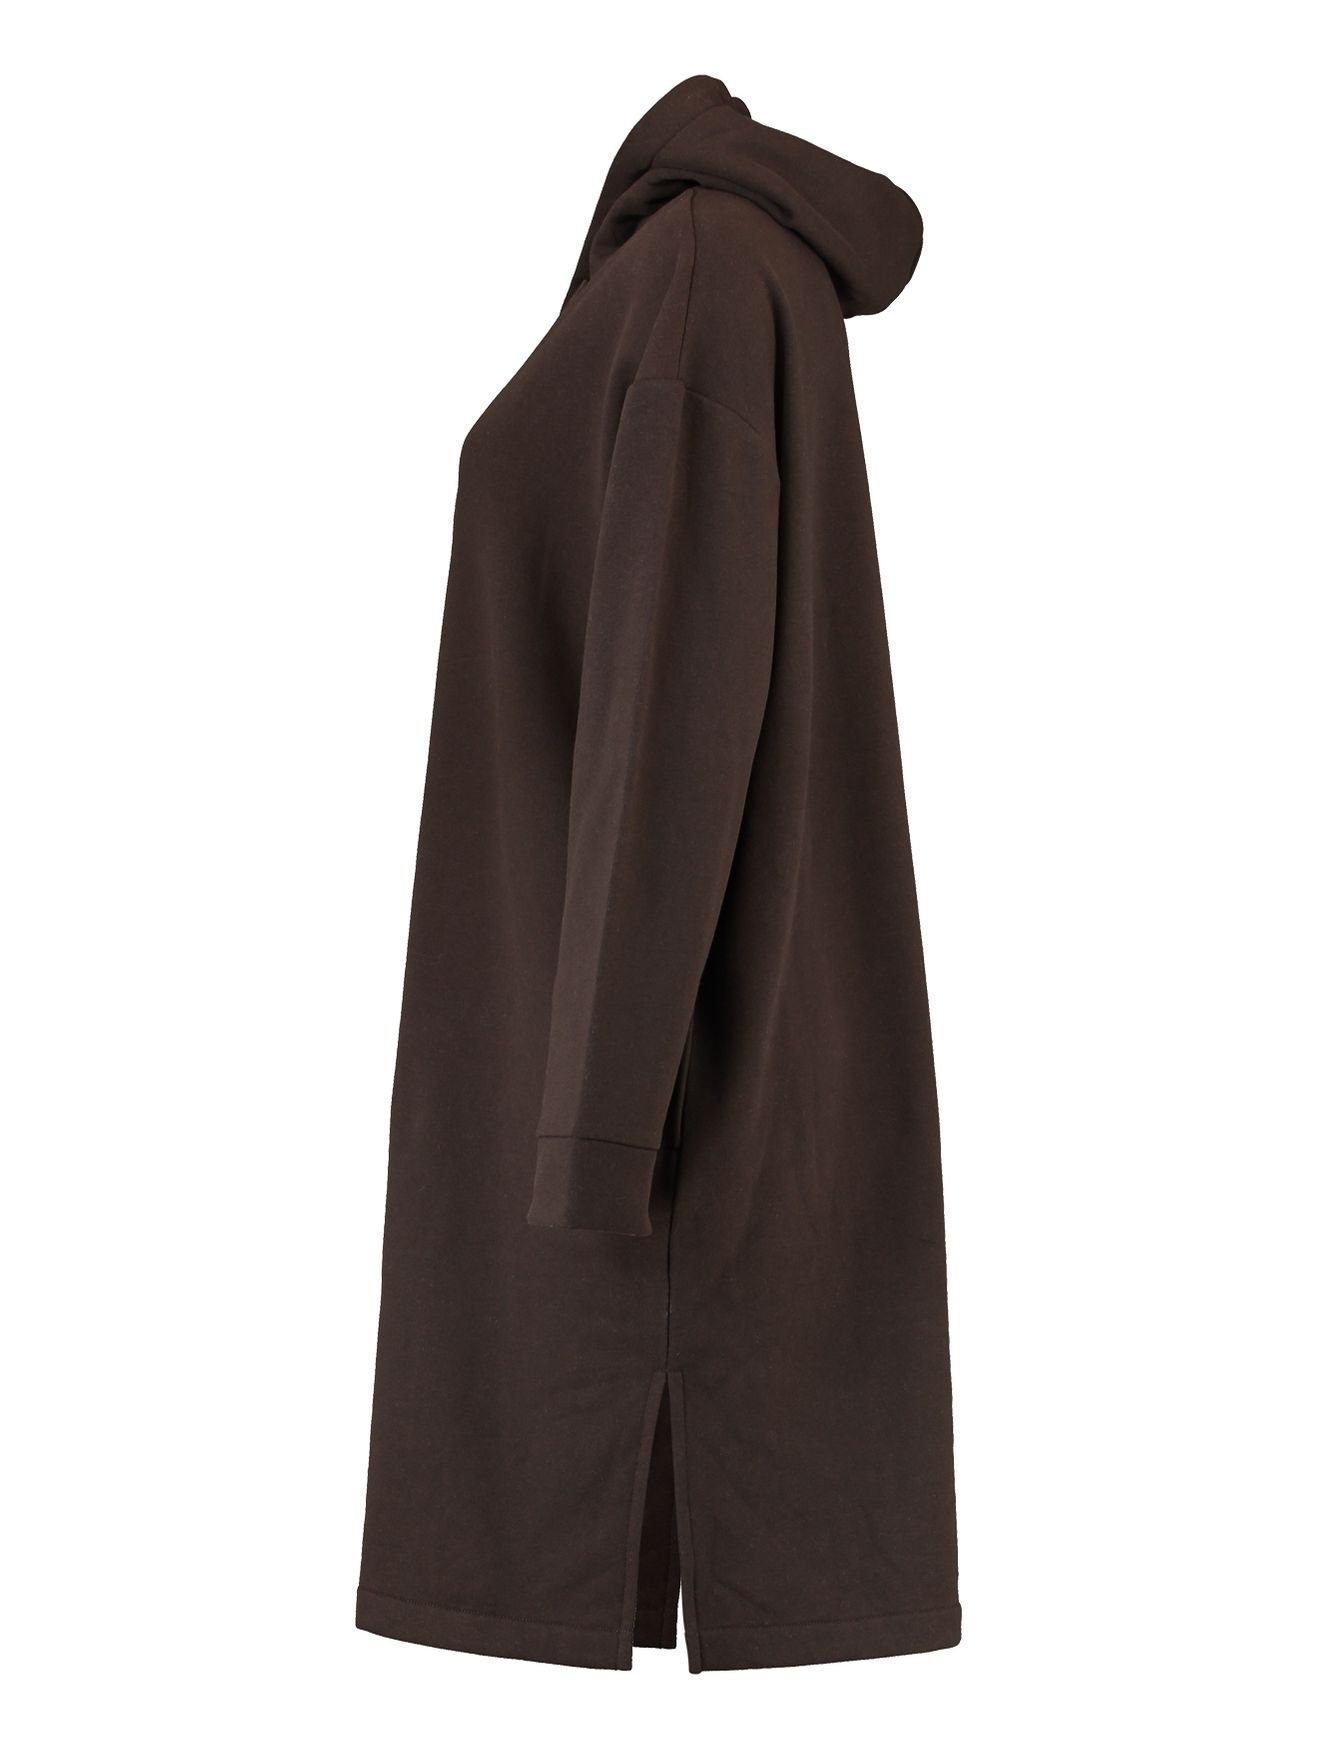 Dress SWERA (lang) Shirtkleid Sweat Braun-2 4705 Knielang Kapuzen HaILY’S Hoodie Mini Kleid in Pullover